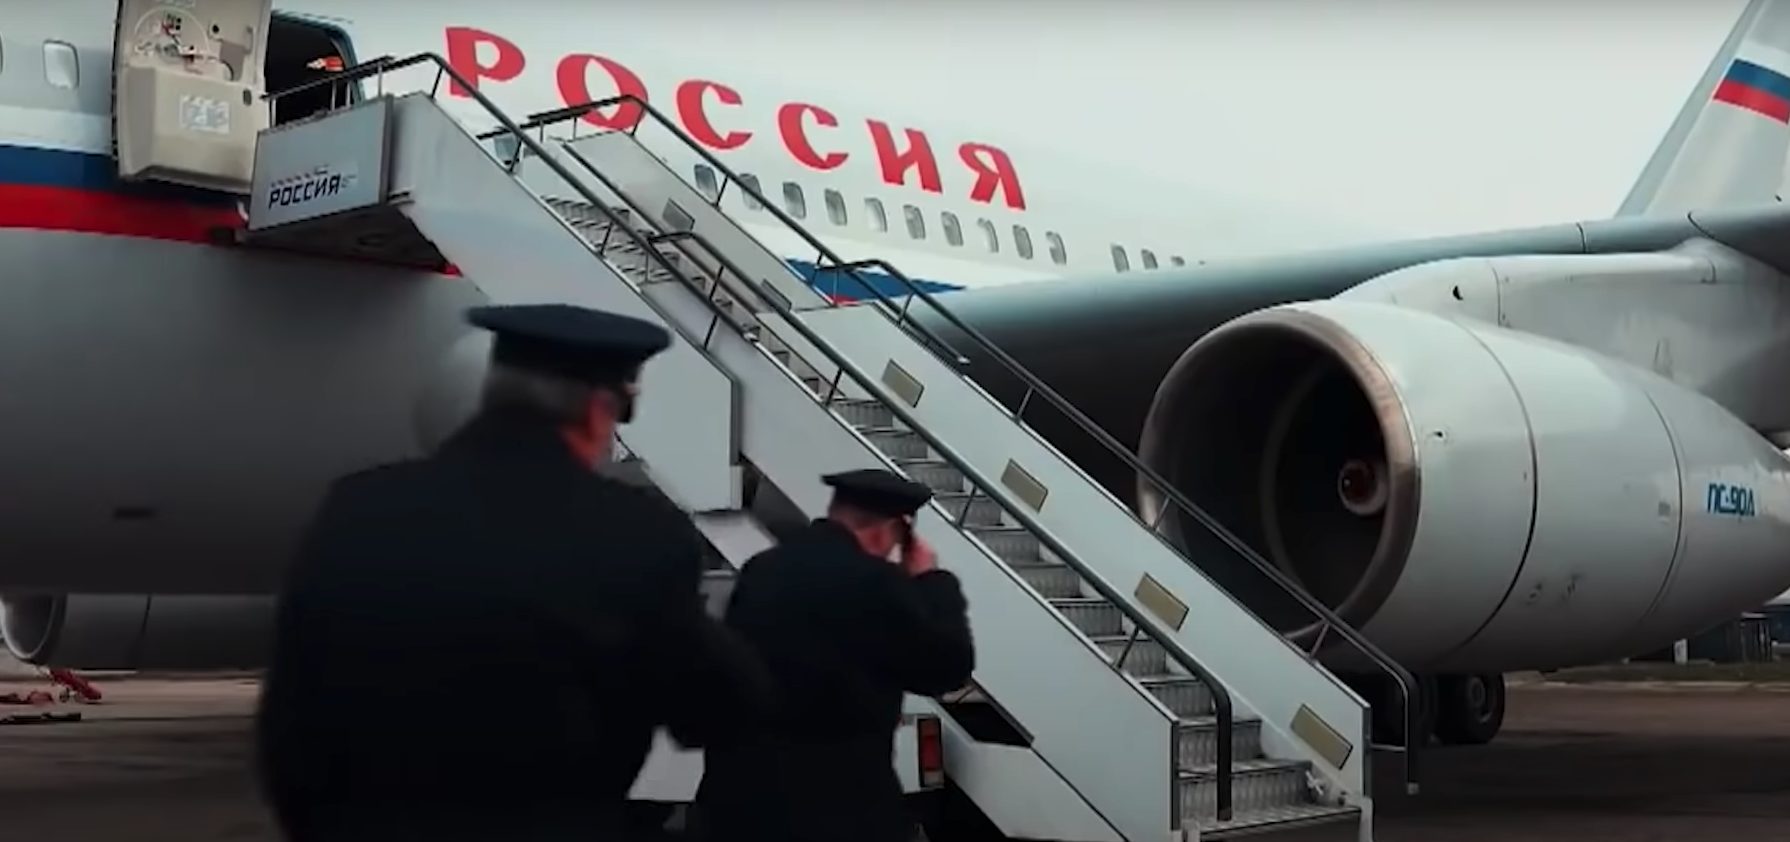 Poetin's presidentiële vliegtuig